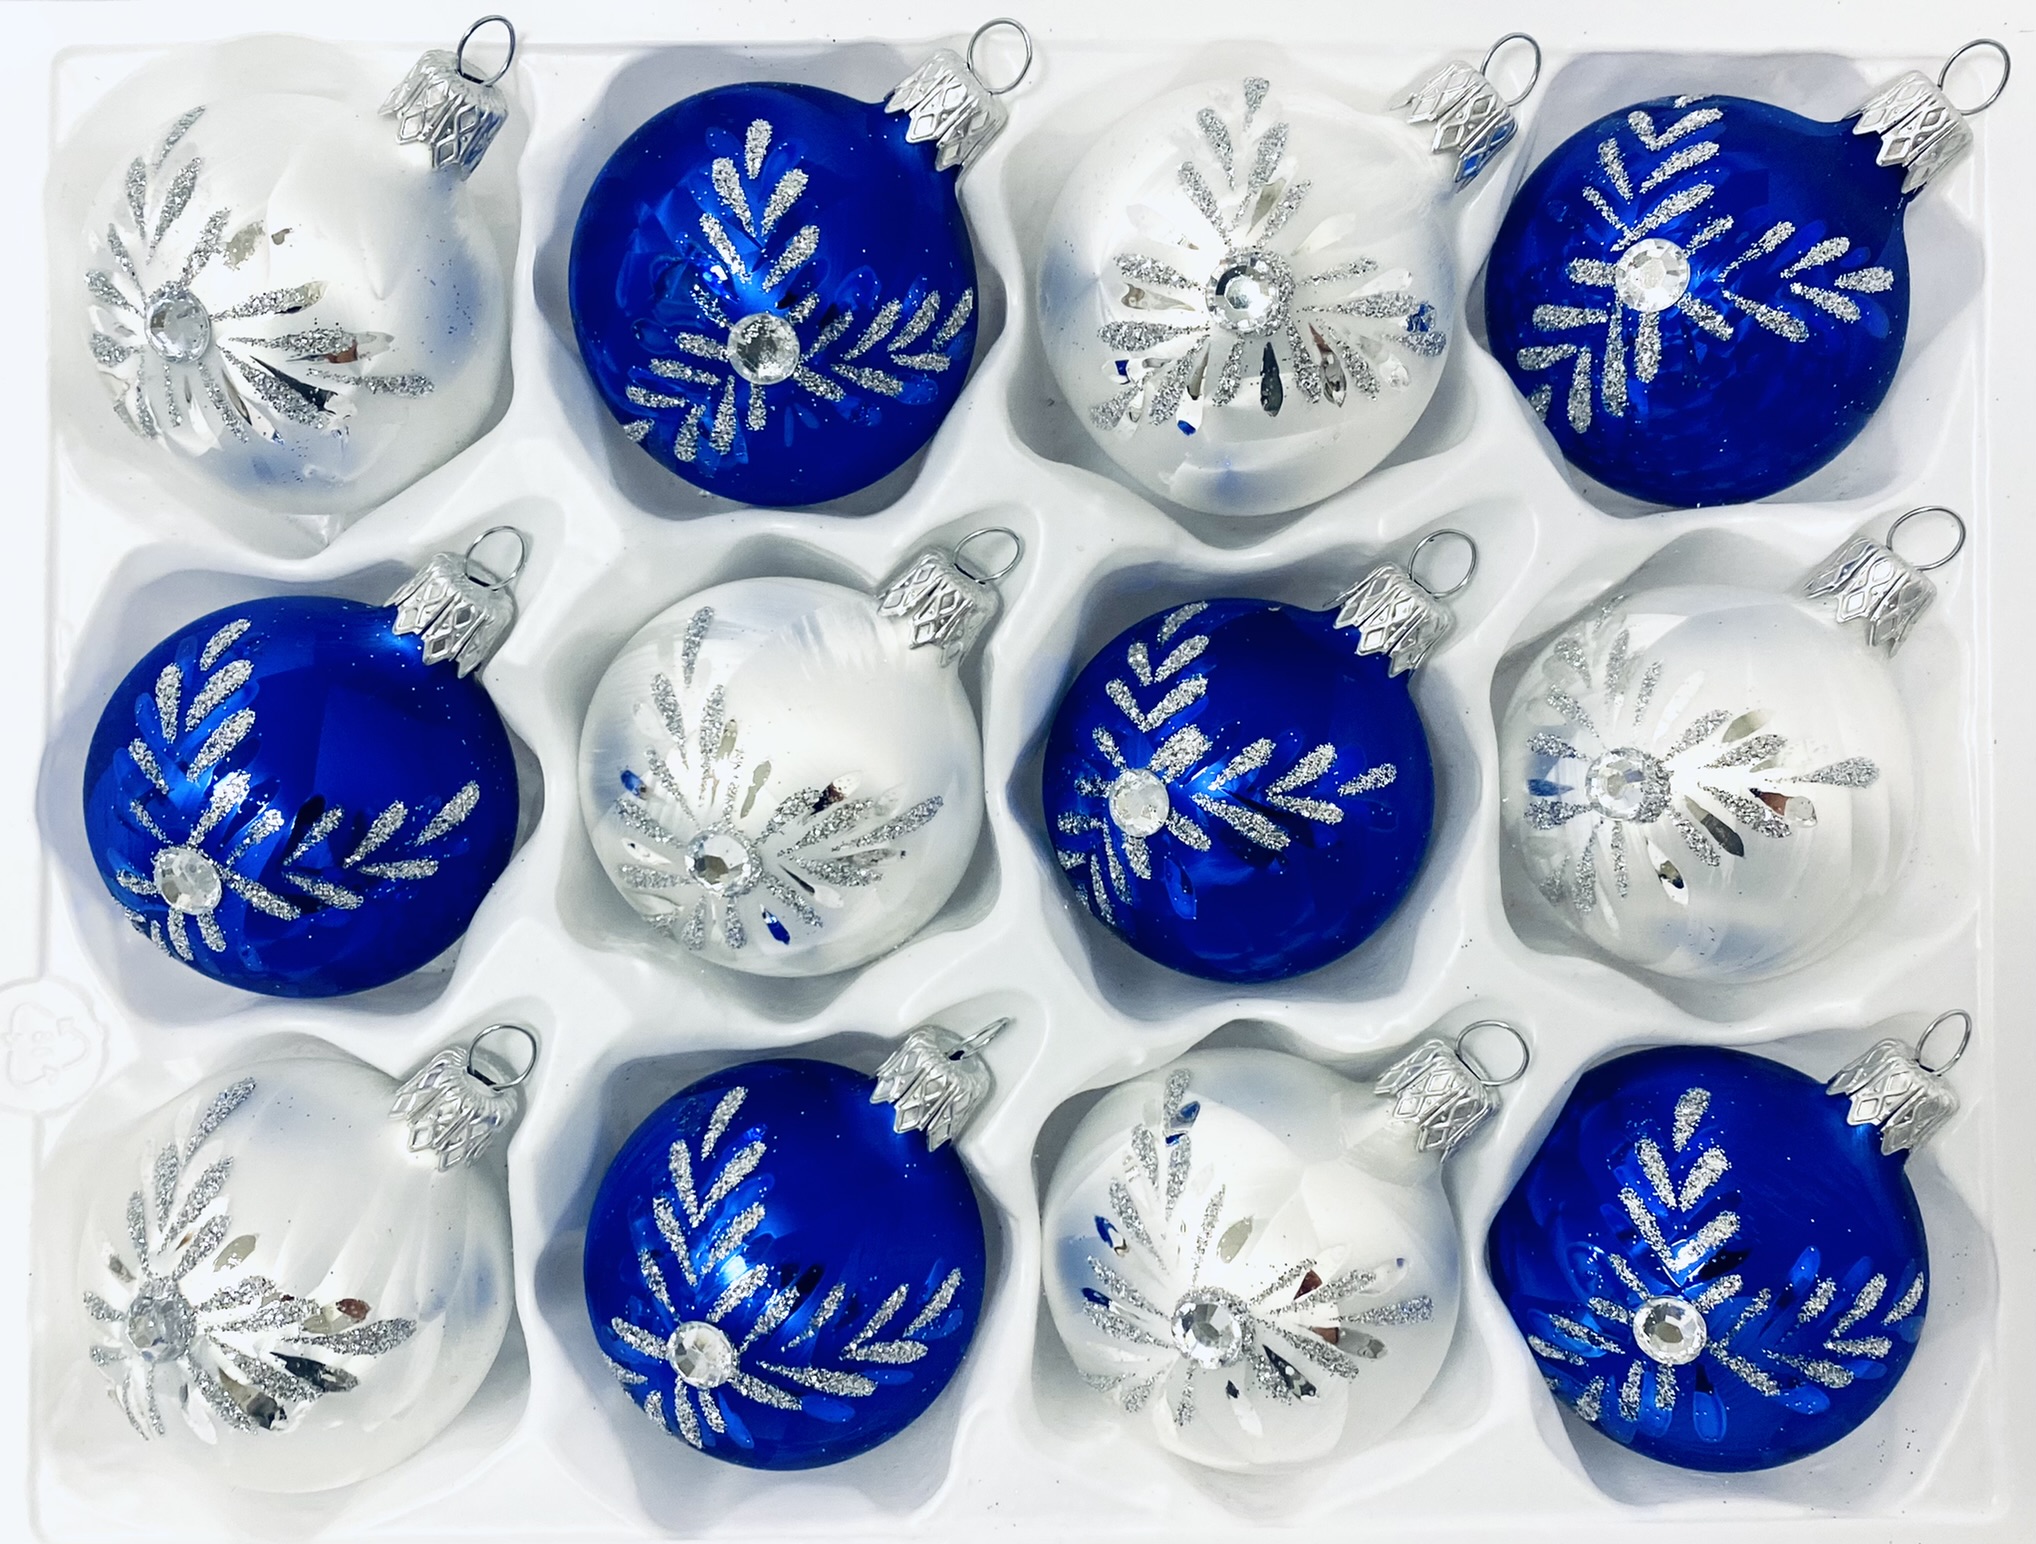 Irisa Vánoční ozdoby LUISA kombinace bílé a modré koule s dekorem mrazolak 5 cm, SET 12 ks Balení: 12ks, Barva: modrá;bílá, Velikost: 5 cm